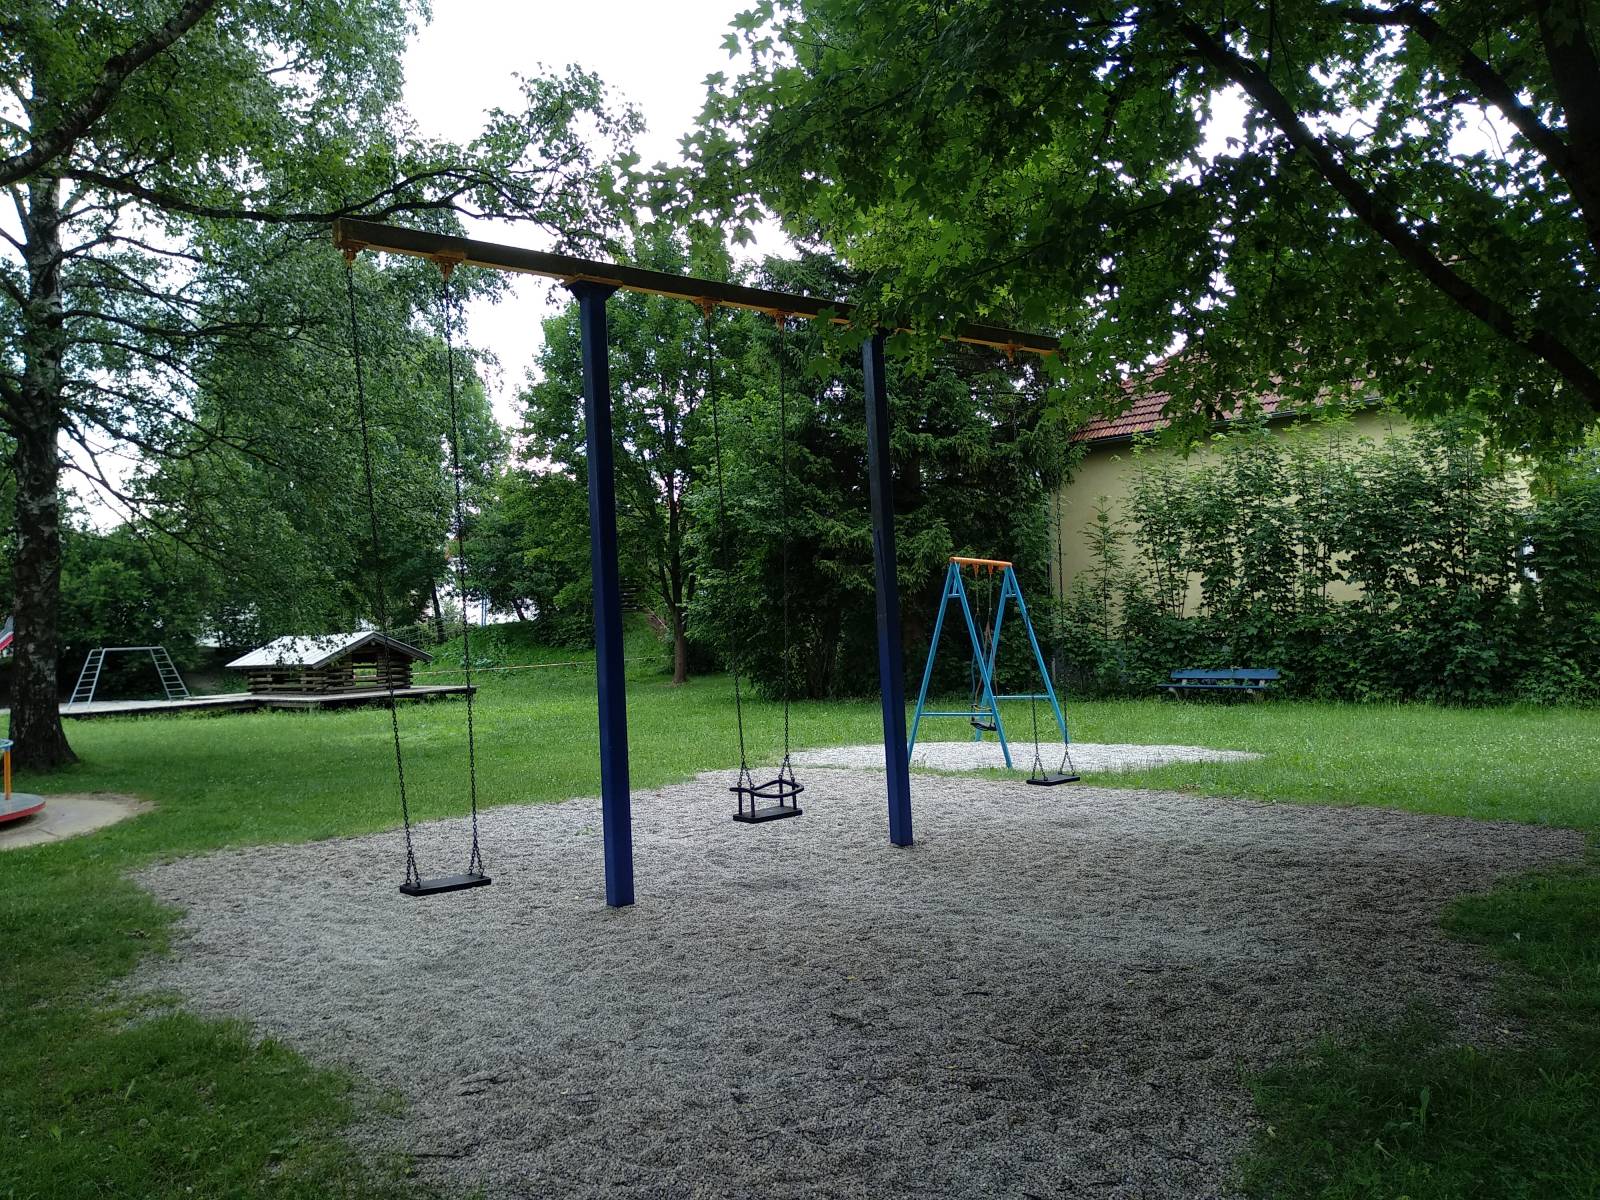 Spielplatz Greifenberger Straße in Eching am Ammersee